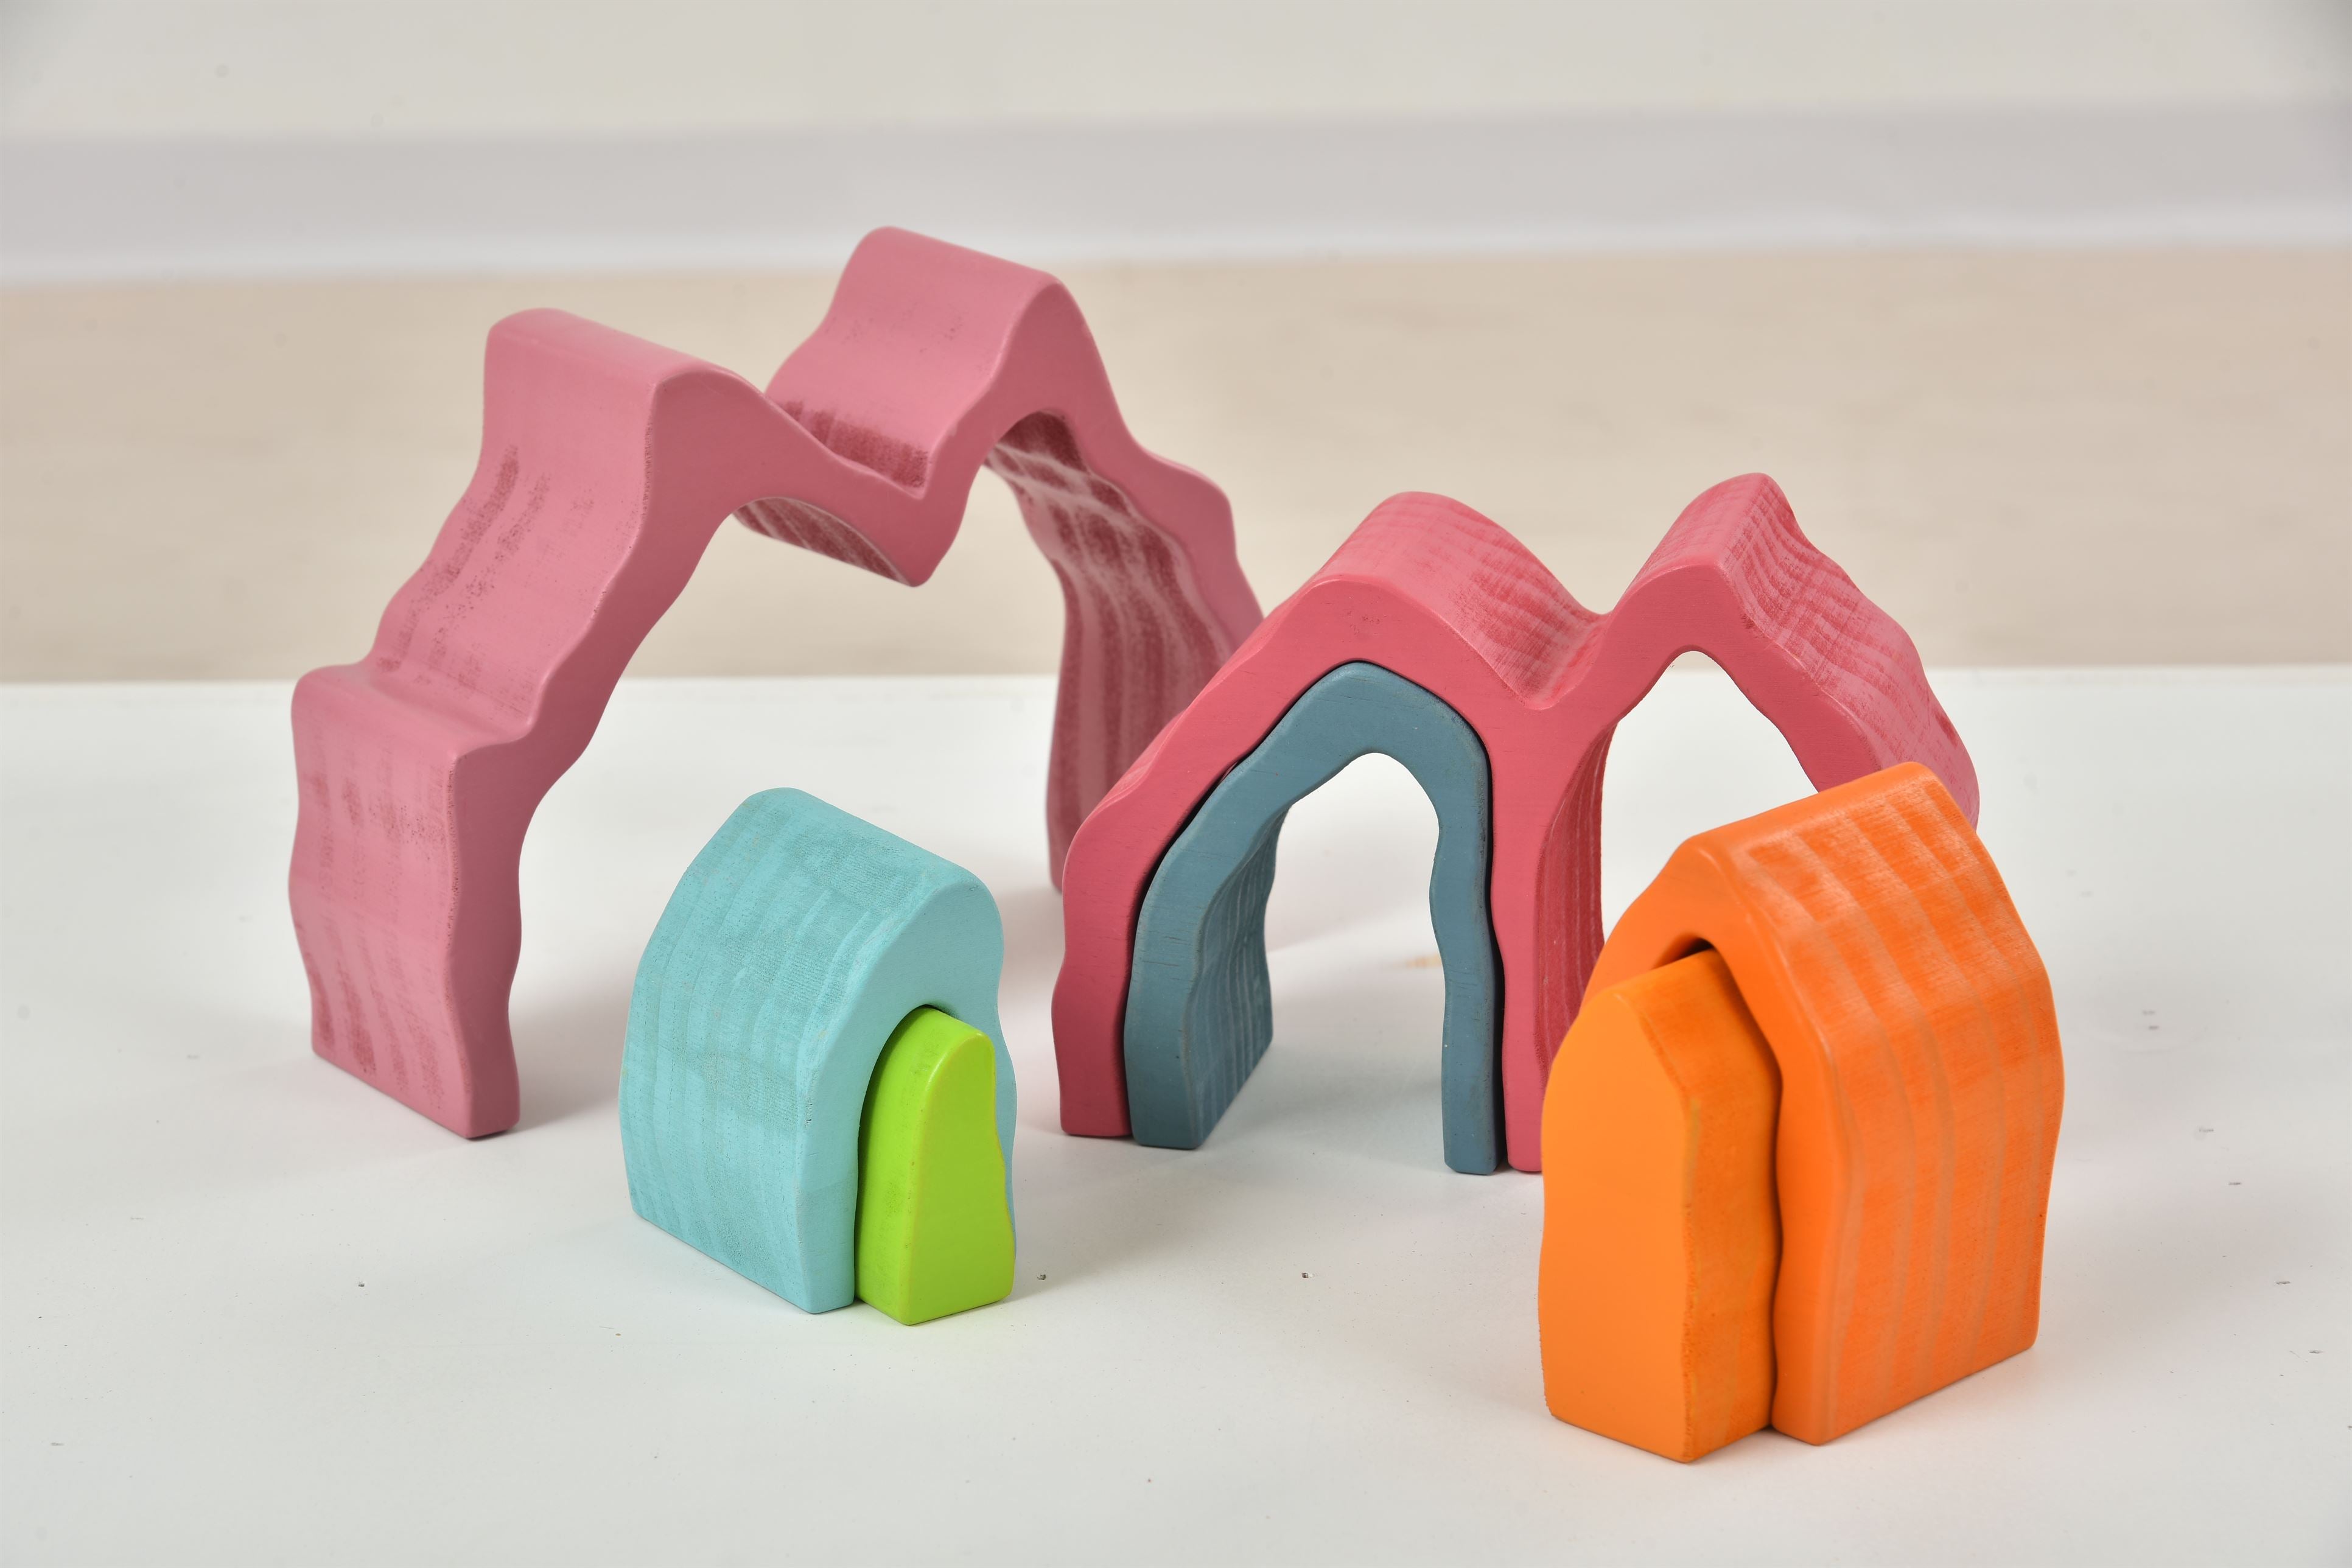 Wooden Mountain Rainbow Stacker Toy Blocks